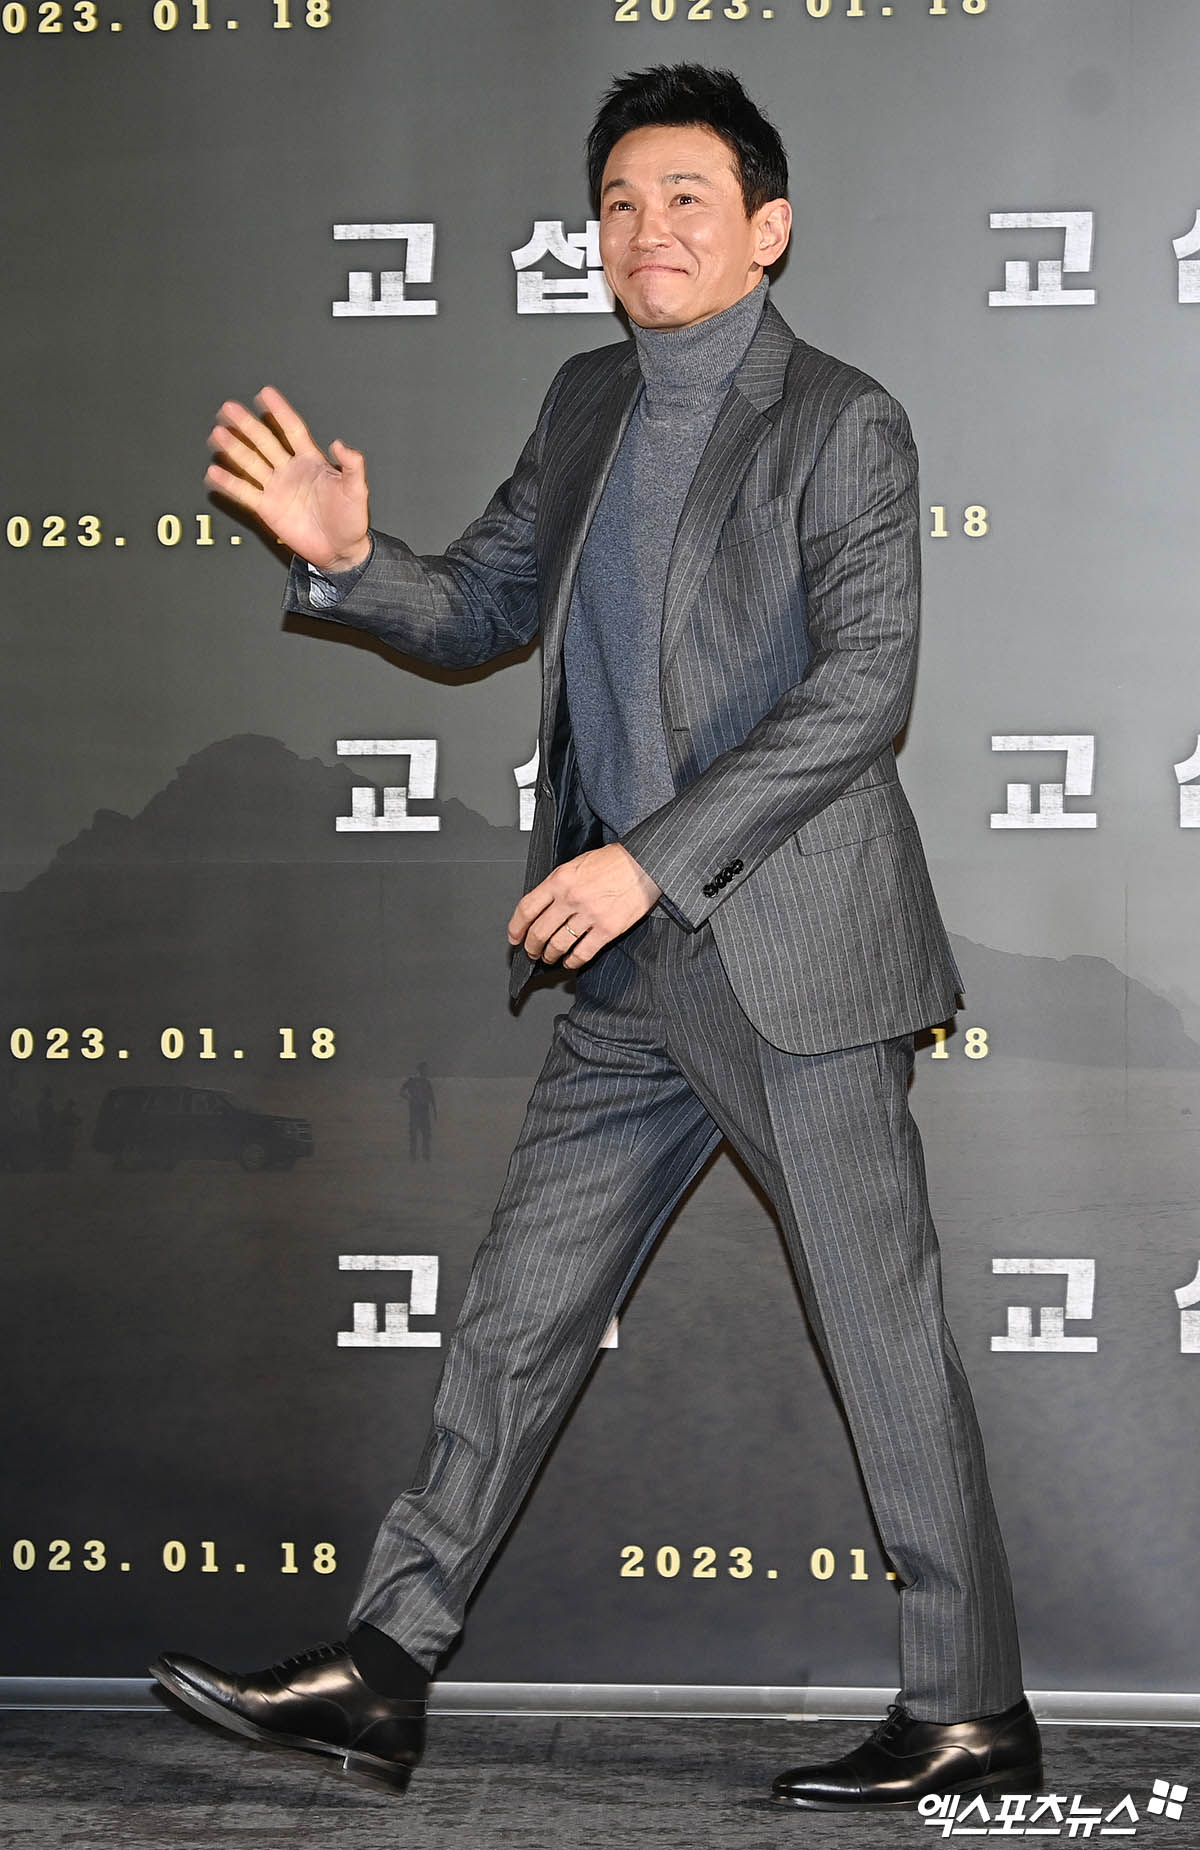 Họp báo hot nhất ngày: Hyun Bin diện mạo râu ria gây sốc, mới lên chức bố mà đã tuột dốc visual thế này - Ảnh 6.